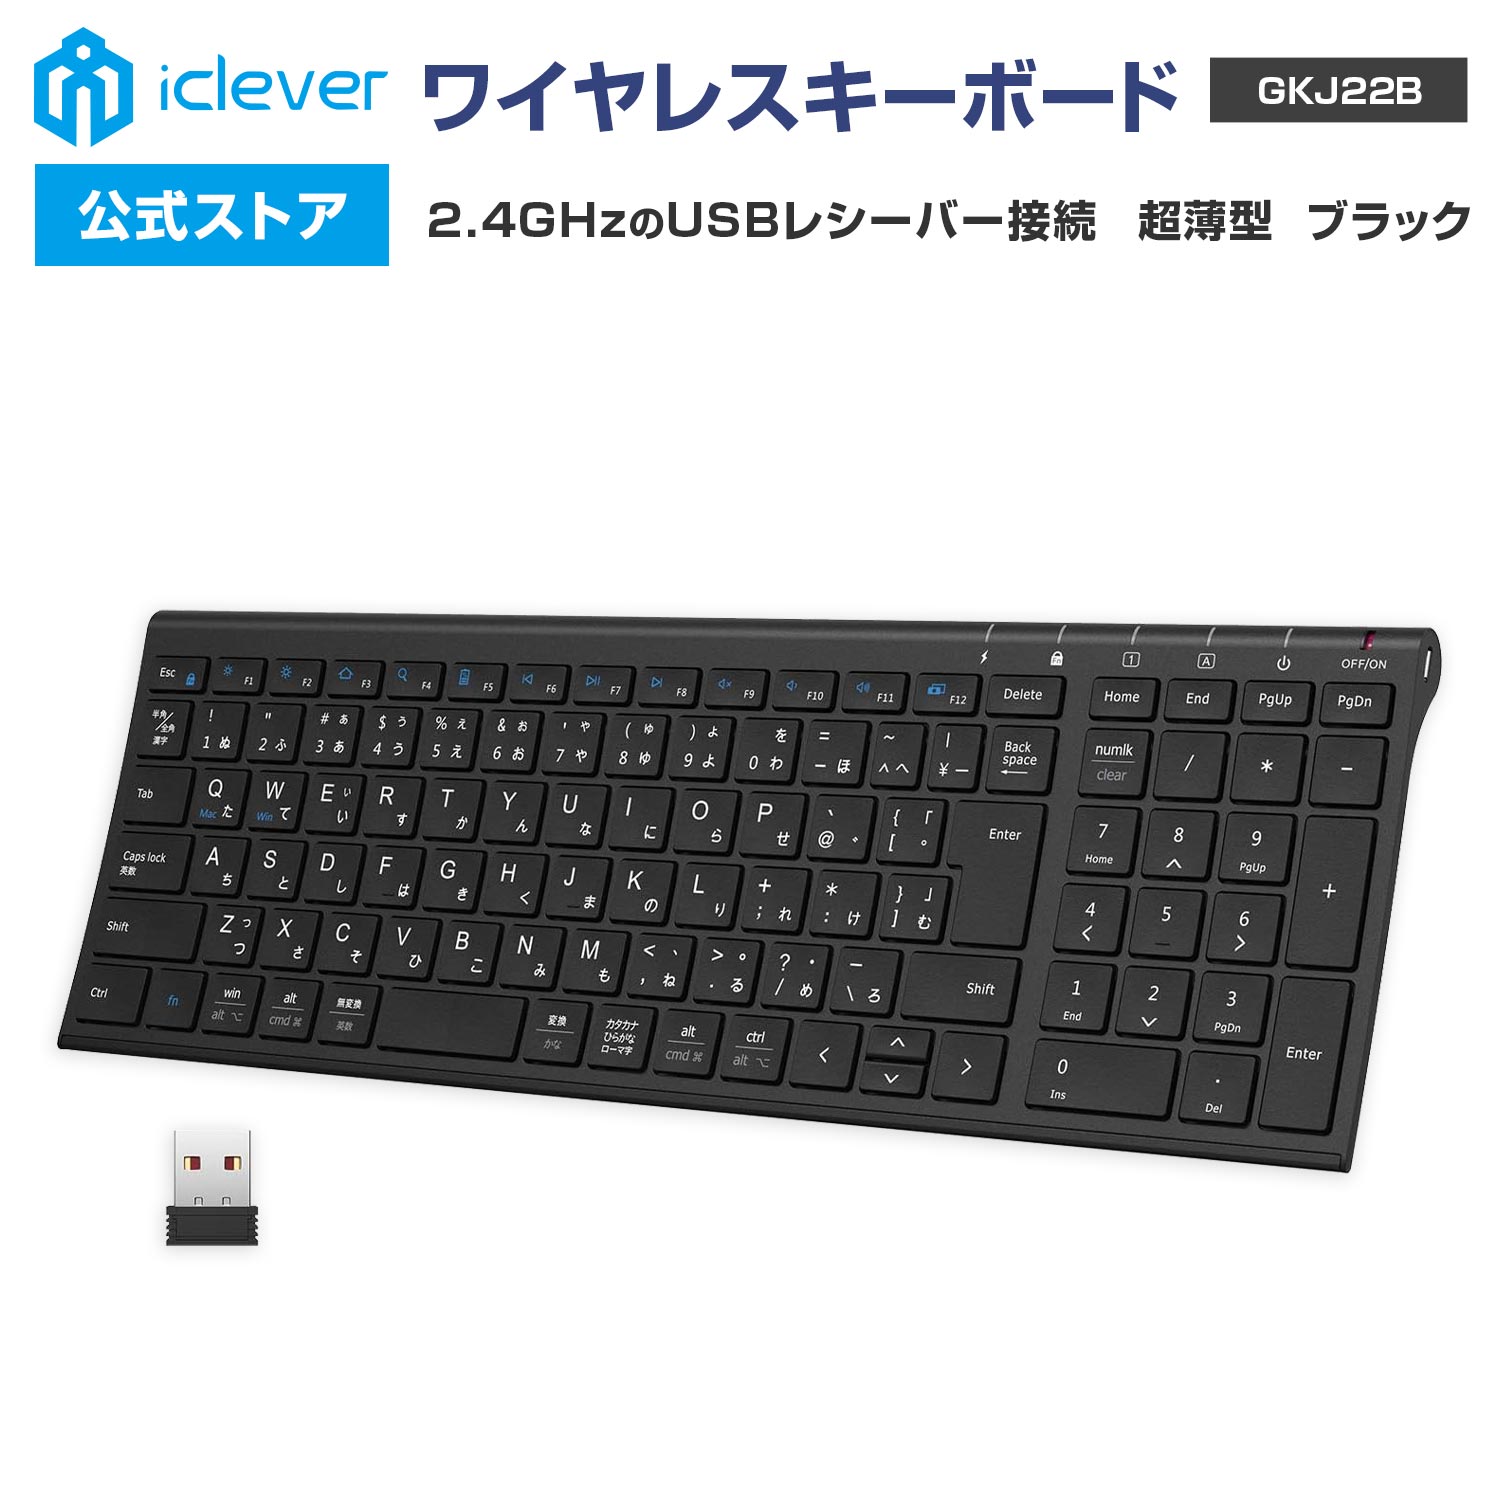 【iClever公式】 ＜ スーパーSALE 30％OFF ＞ ワイヤレスキーボード GKJ22B 人気 話題 2.4GHz接続 USBレシーバー接続 テンキー搭載 日本語配列 超薄型 パンタグラフ式 スタイリッシュ ガジェッ…